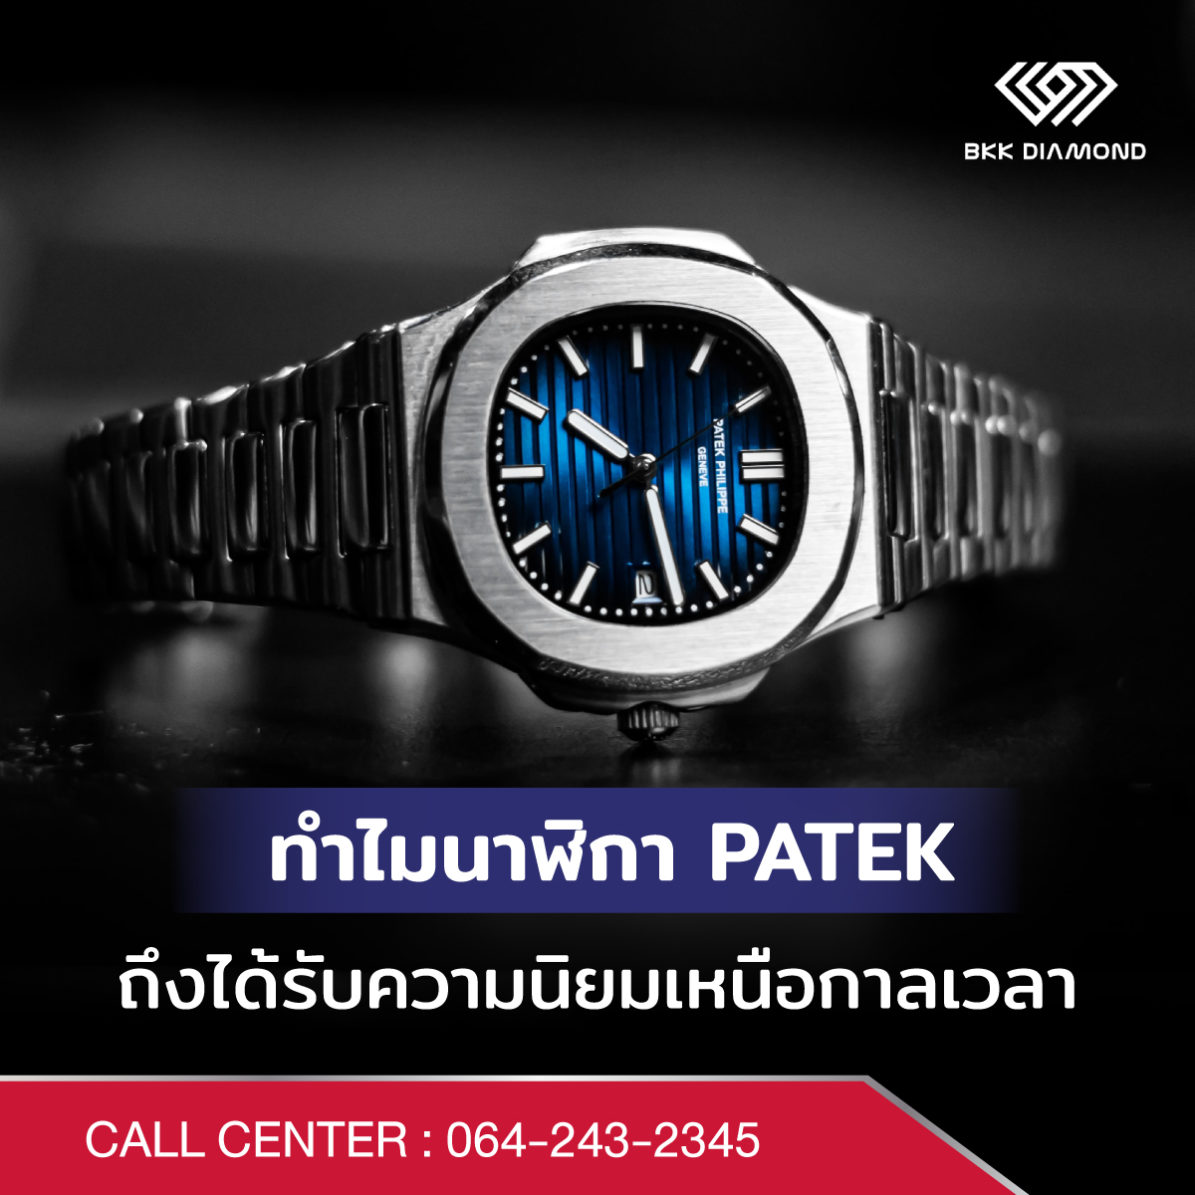 ทำไมนาฬิกา Patek ถึงได้รับความนิยมเหนือกาลเวลา